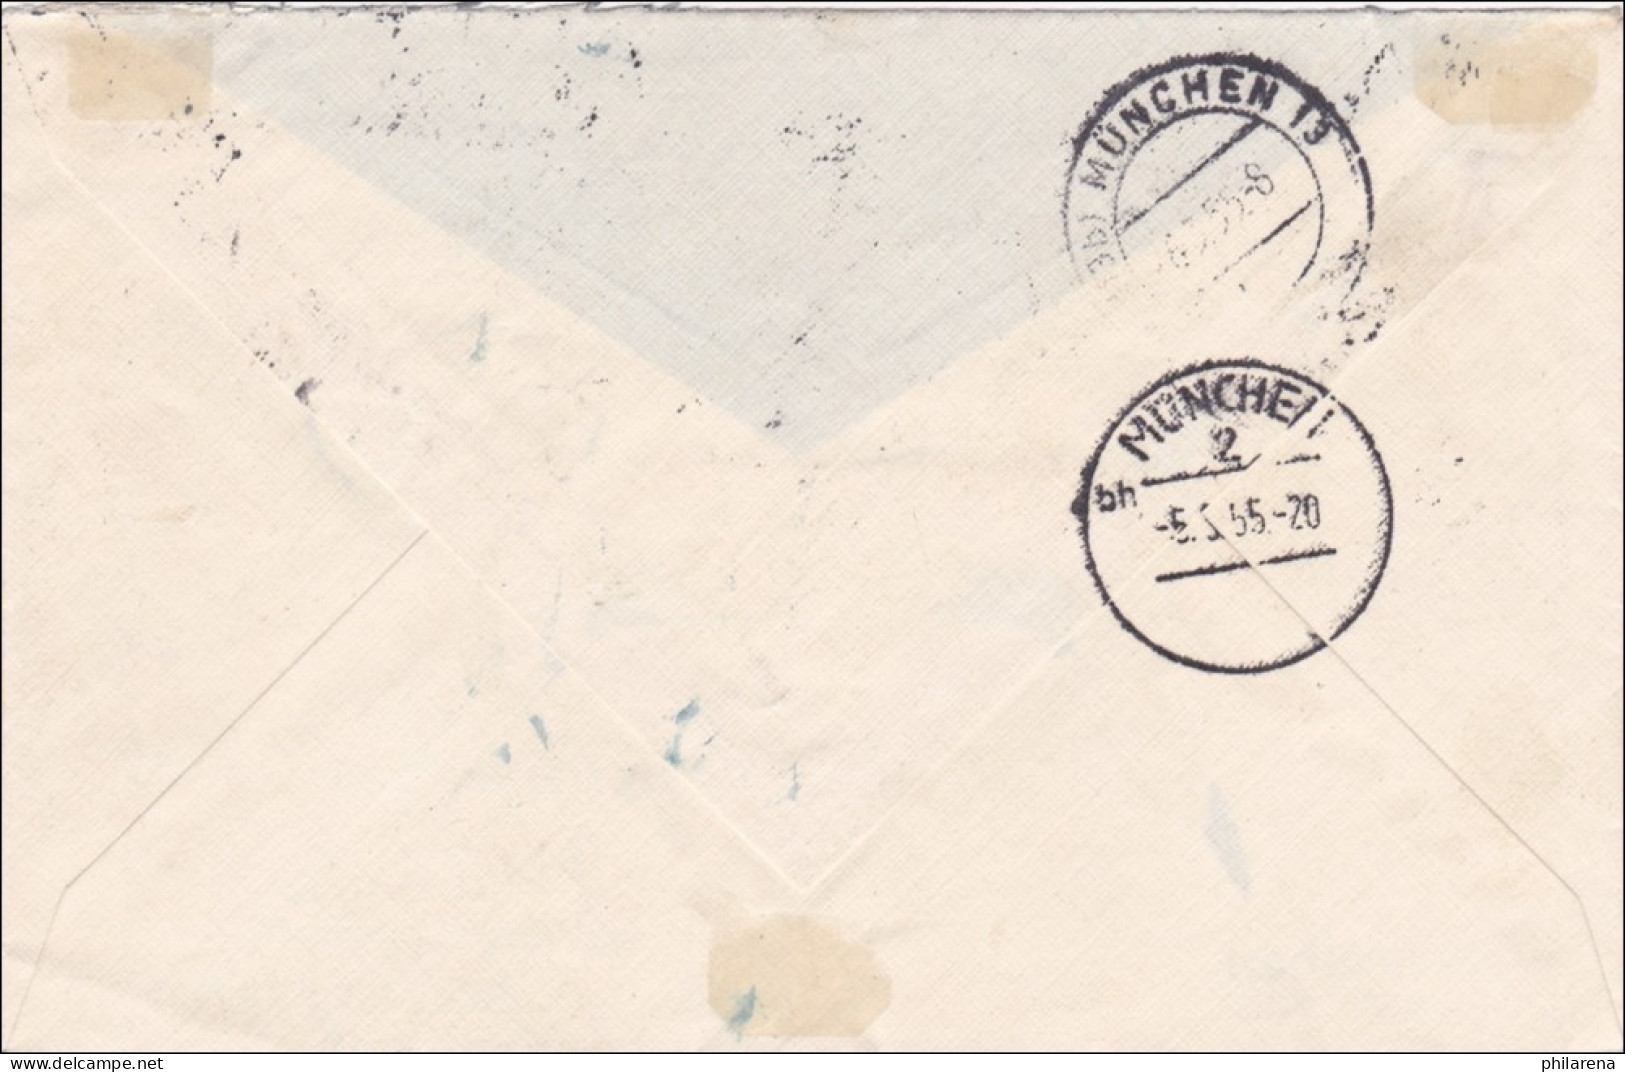 Einschreiben Aus München 1955 - Storia Postale